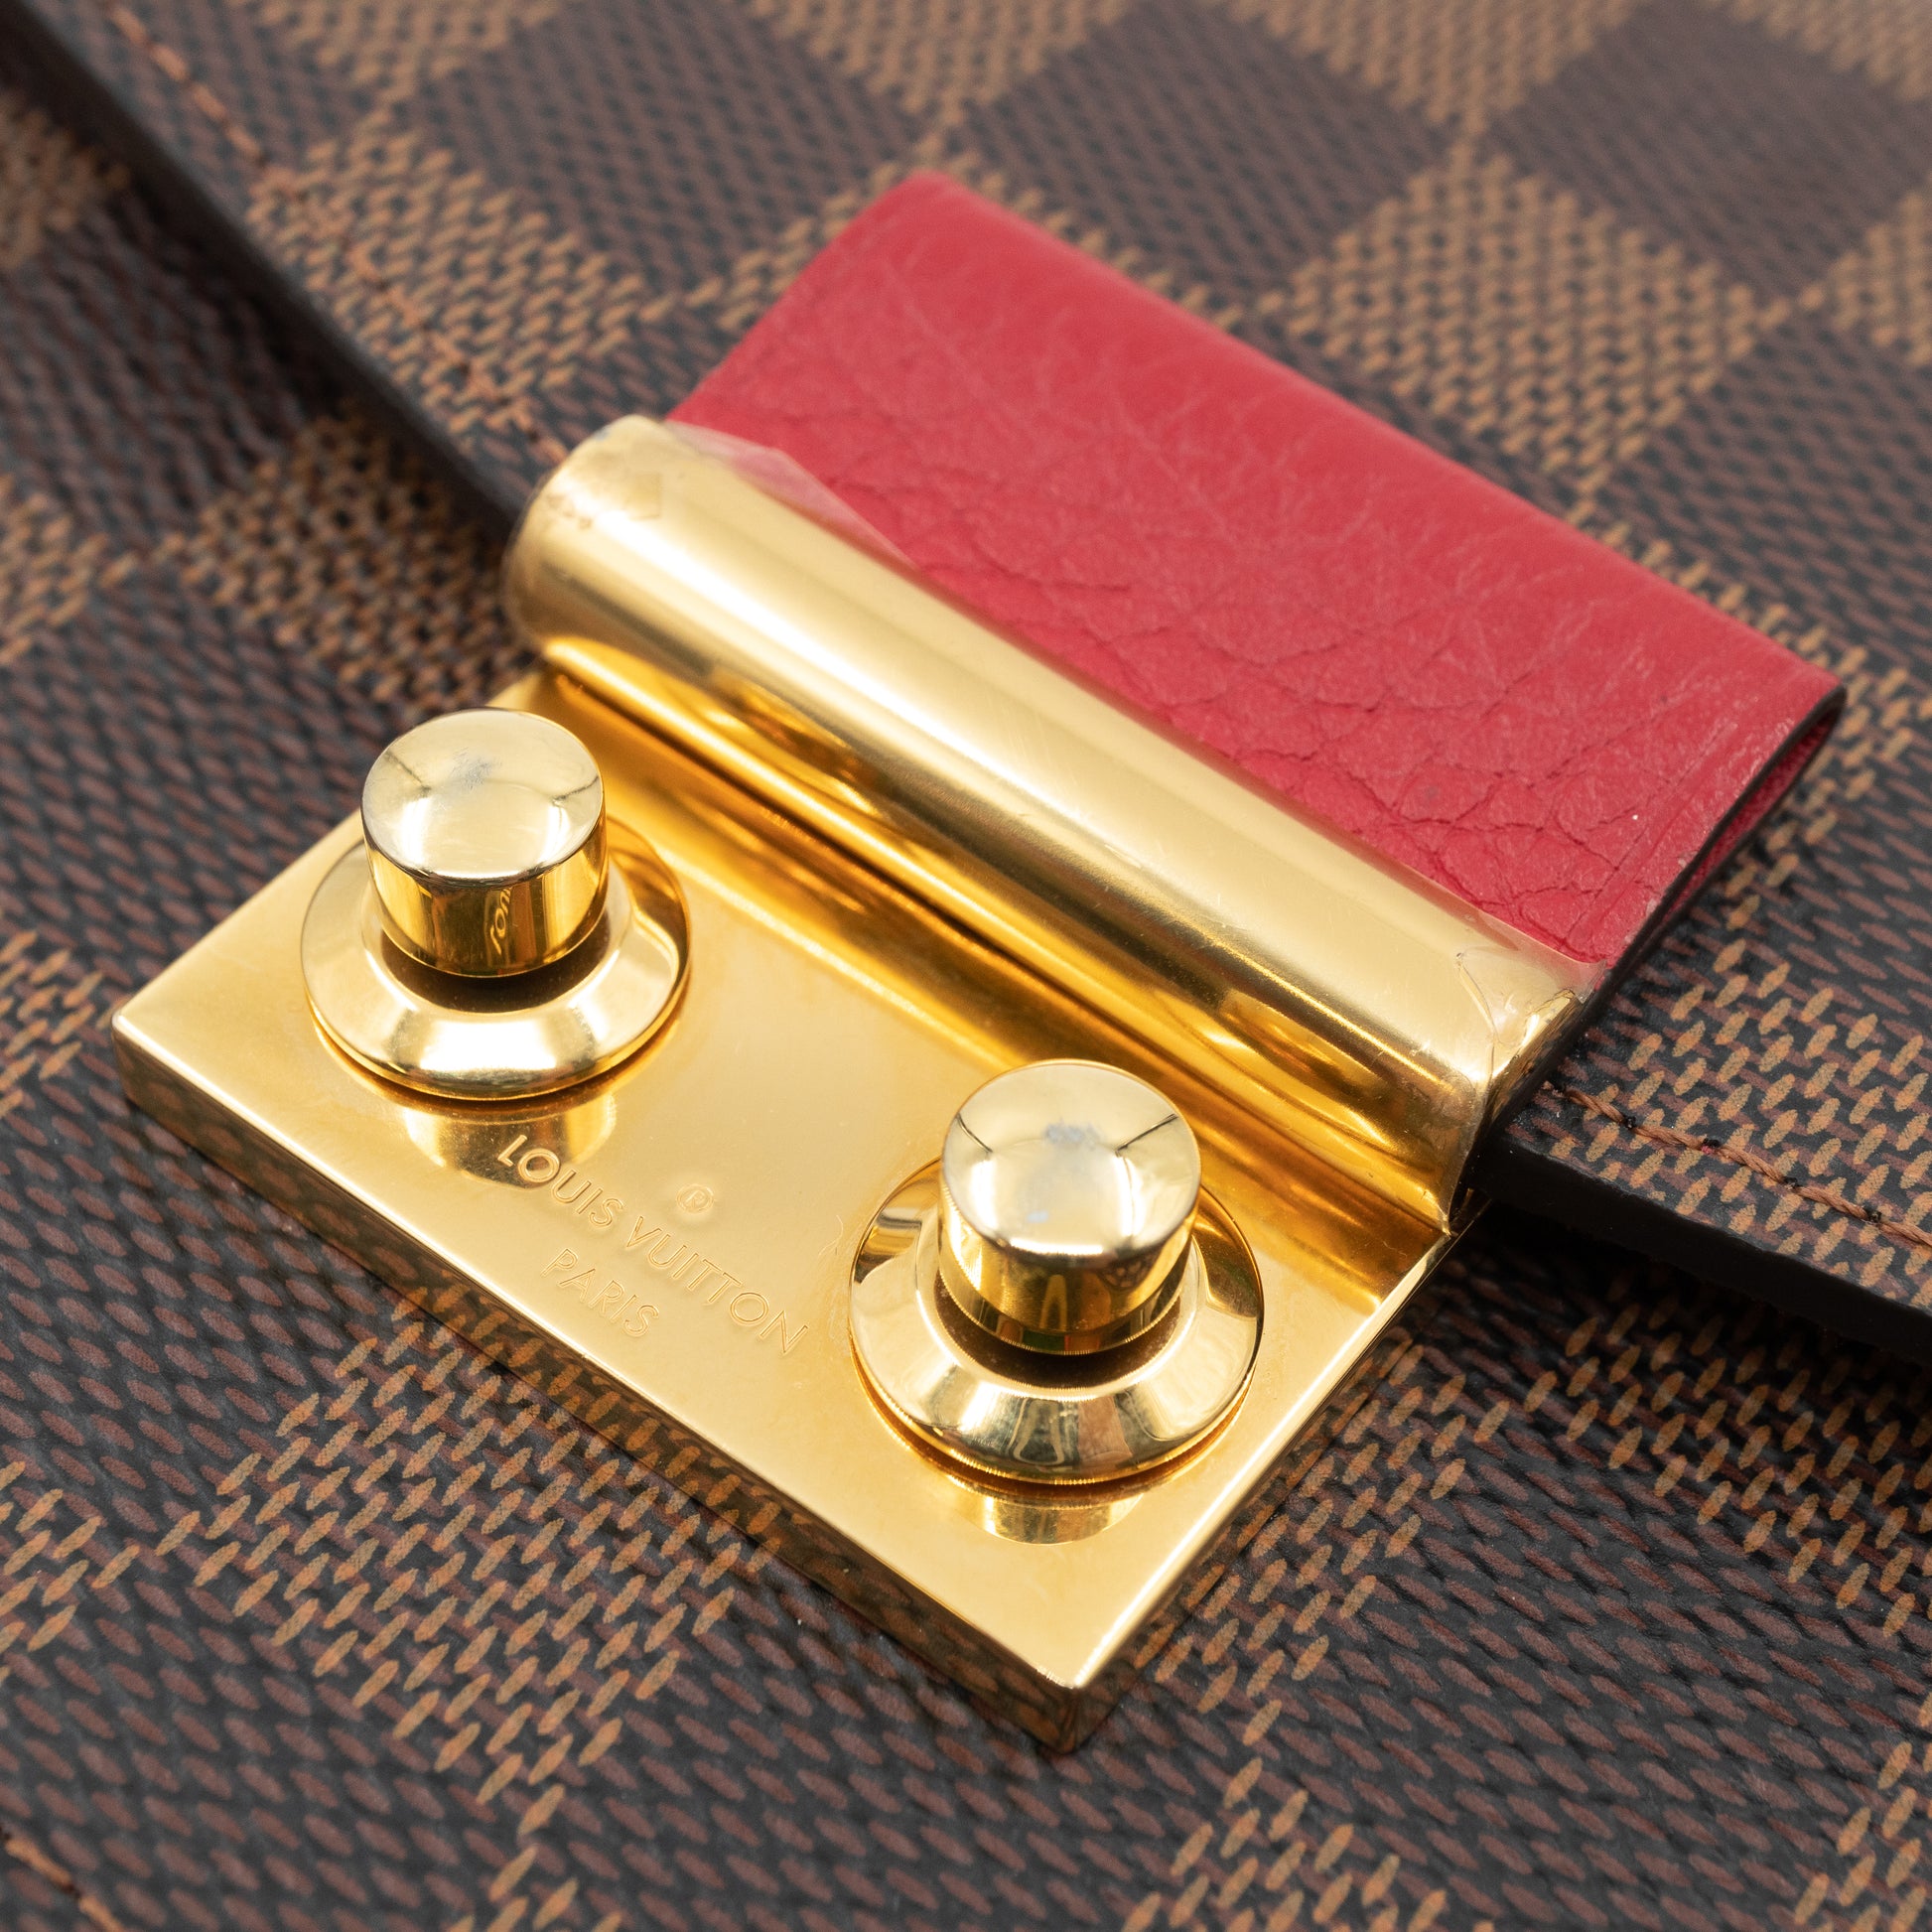 Croisette Scarlet Chain Wallet N60288 - Luxury Replay